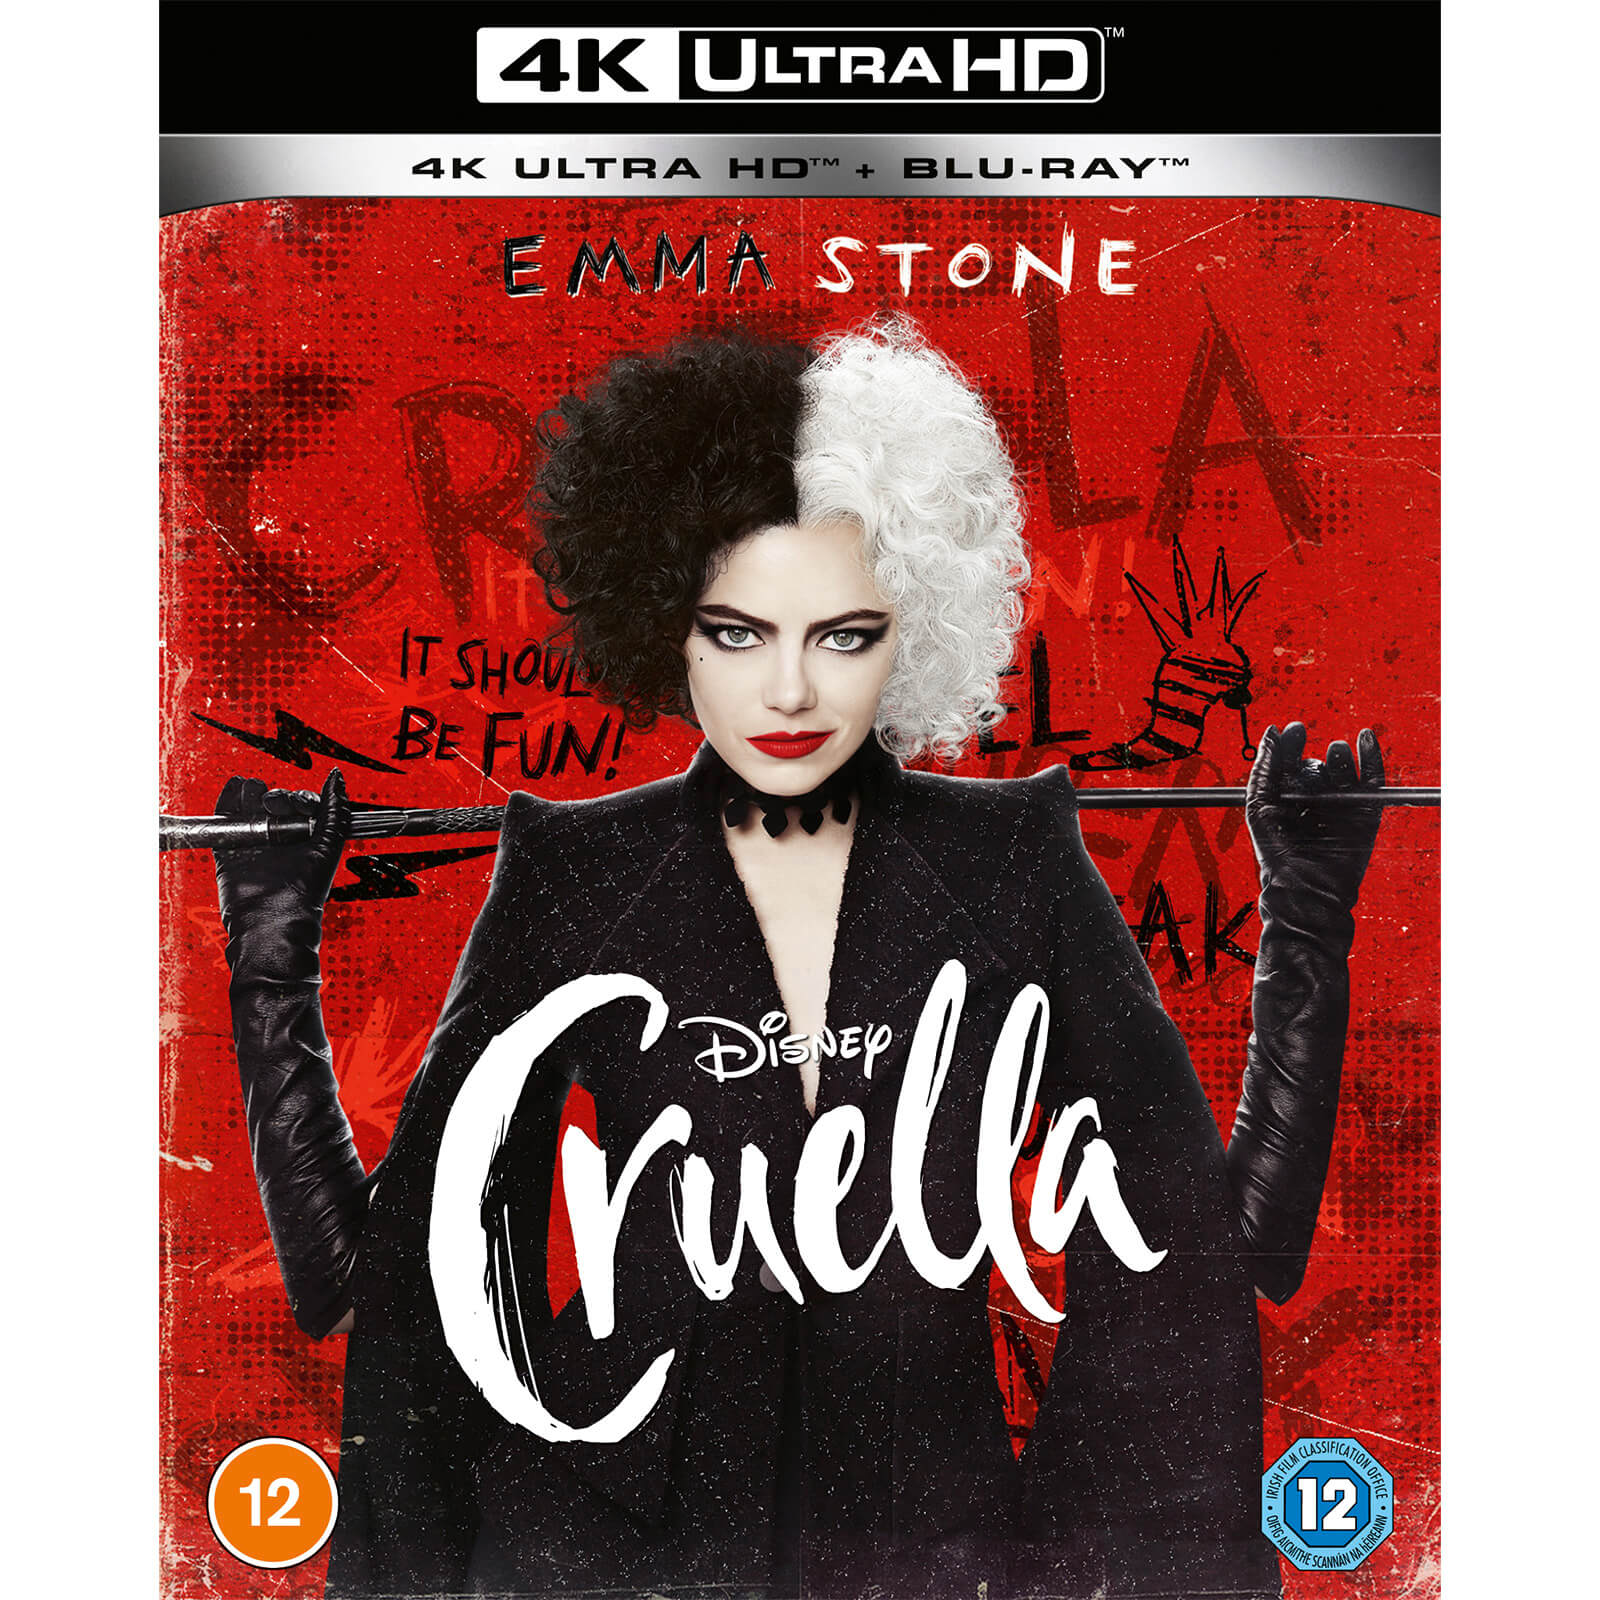 Disney's Cruella - 4K Ultra HD